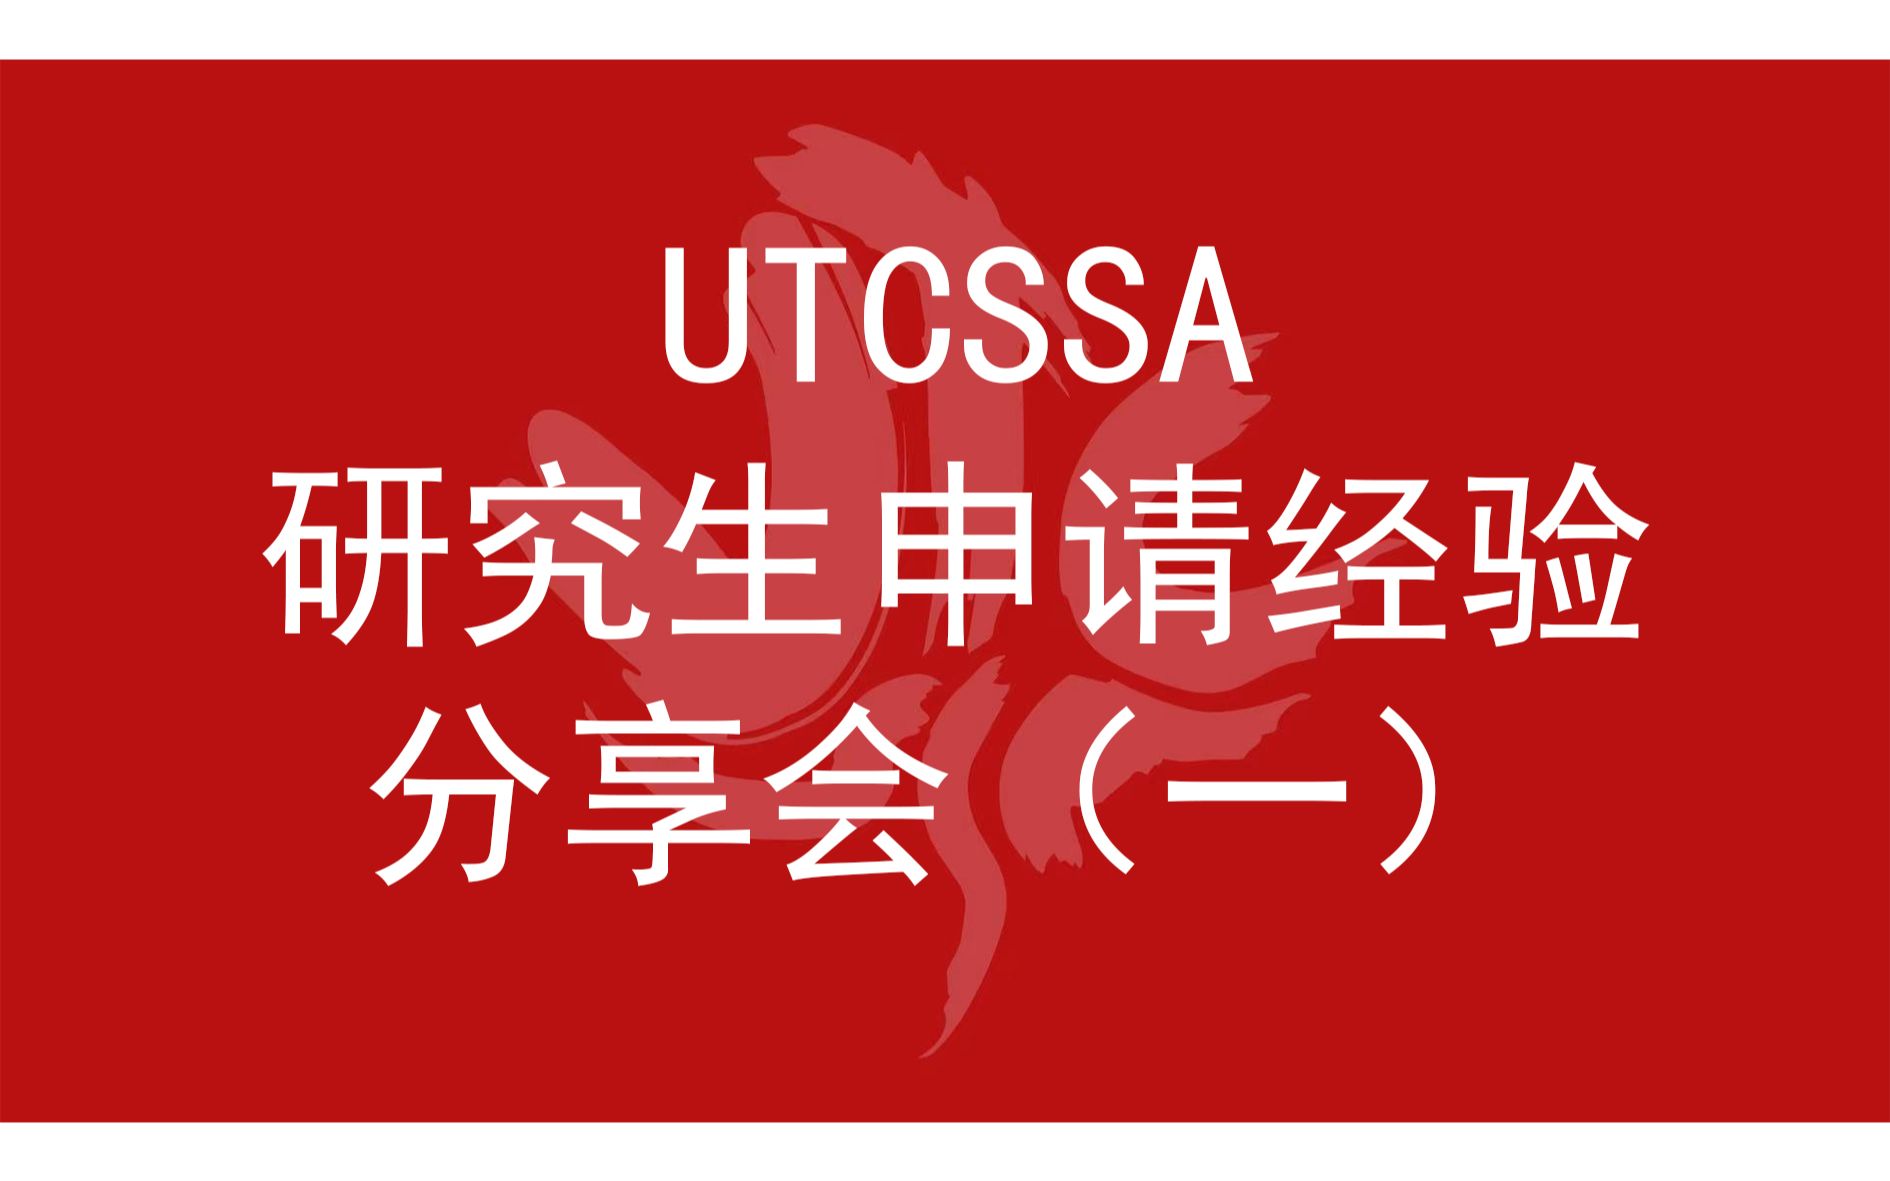 2021年UTCSSA研究生申请经验分享会 — General Sessi